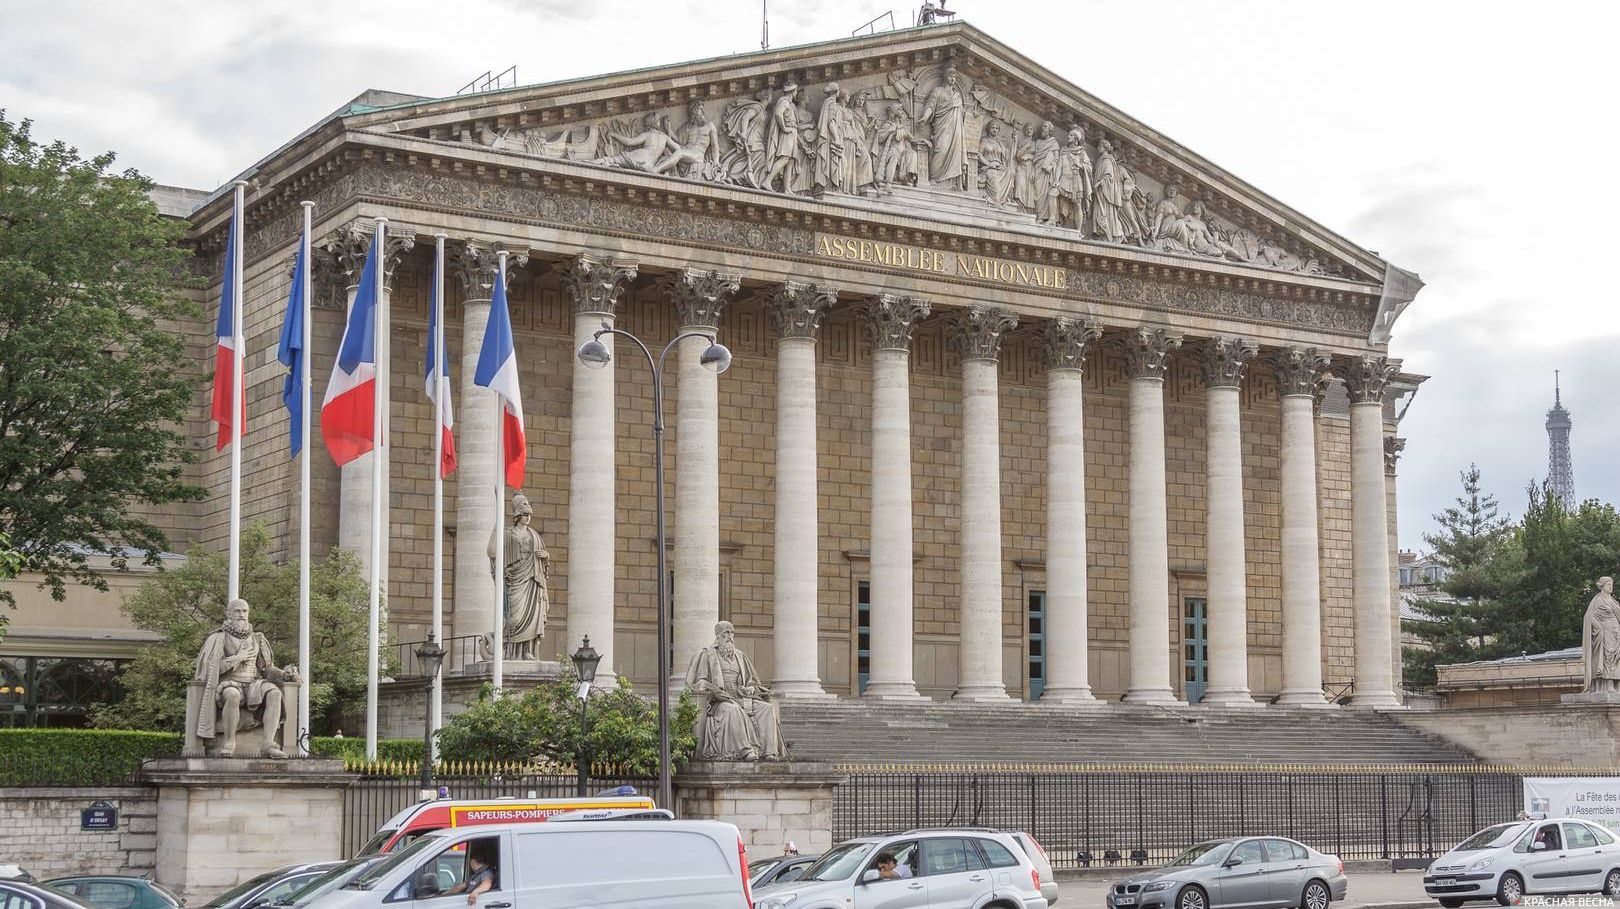 Национальное собрание, Париж, Франция. Июнь 2011